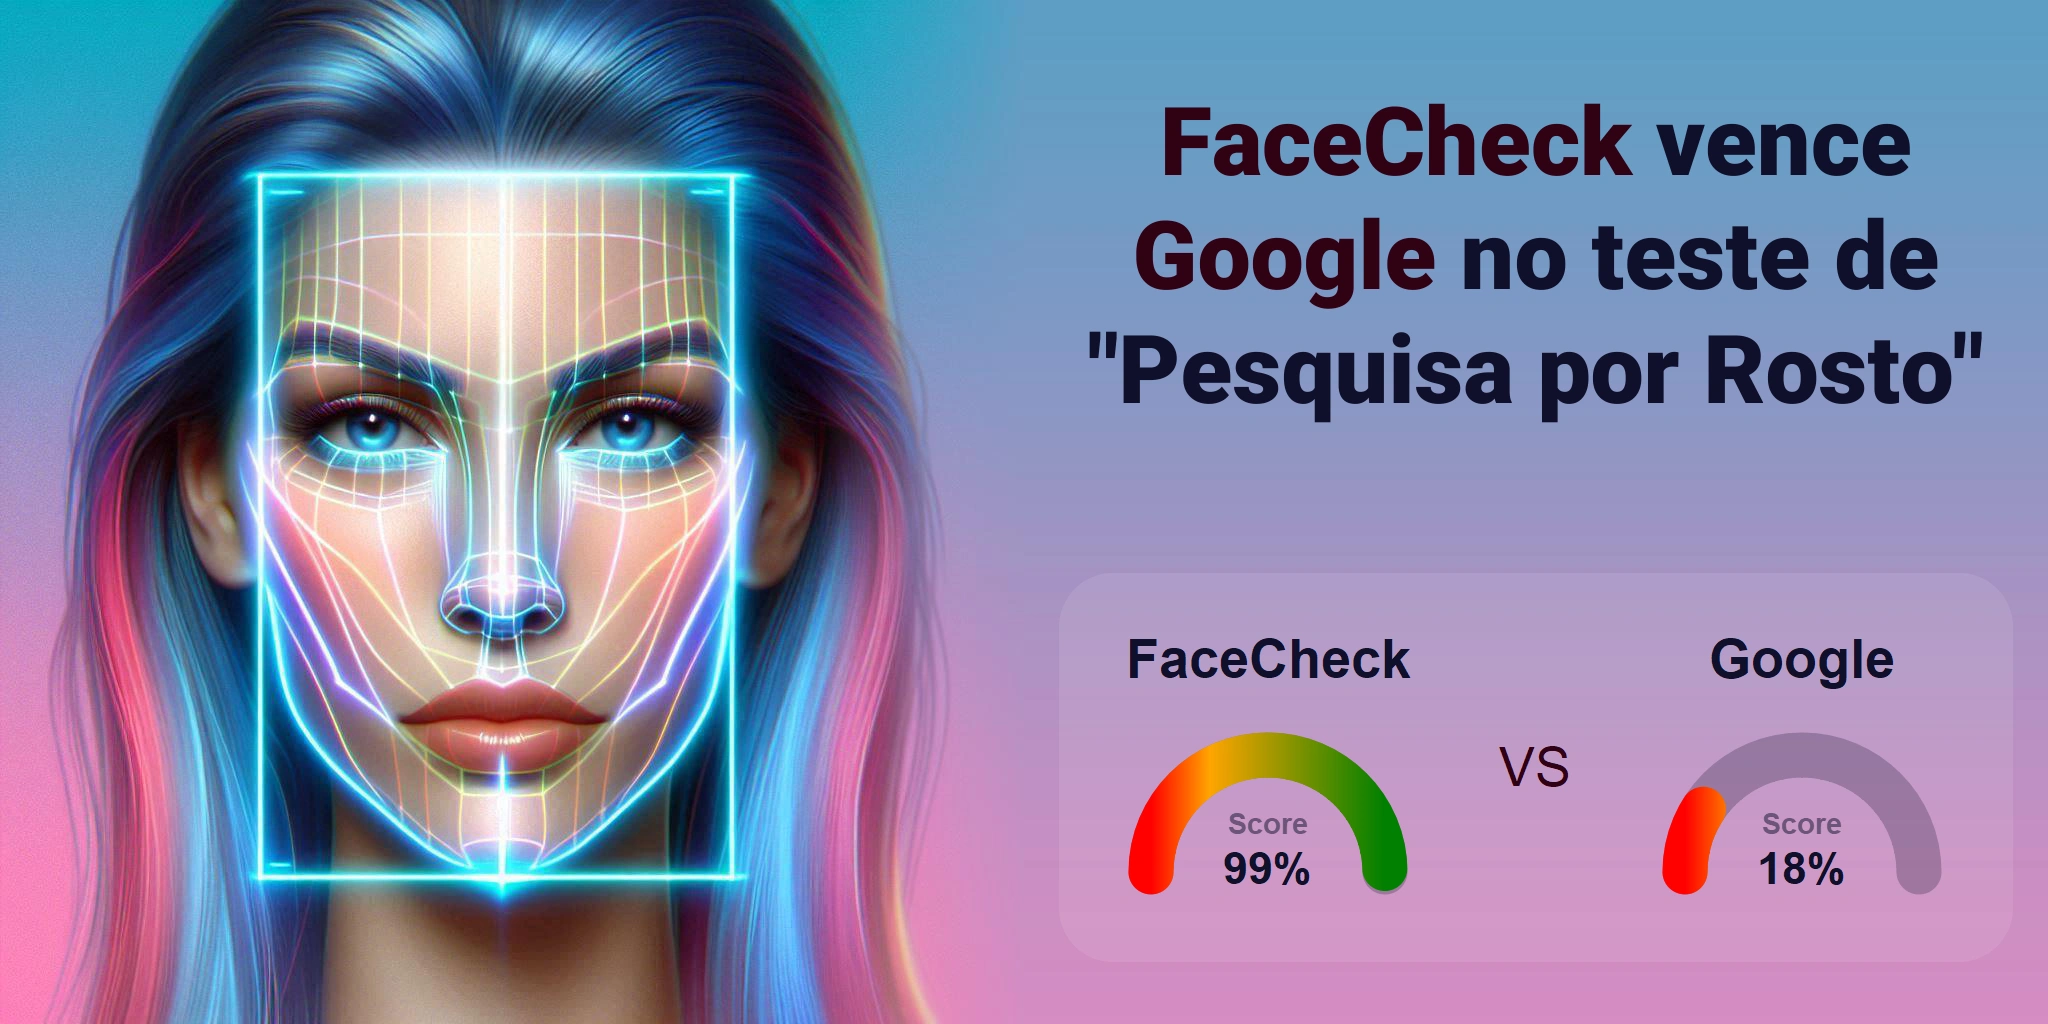 Qual é melhor para busca de rostos: <br>FaceCheck ou Google?